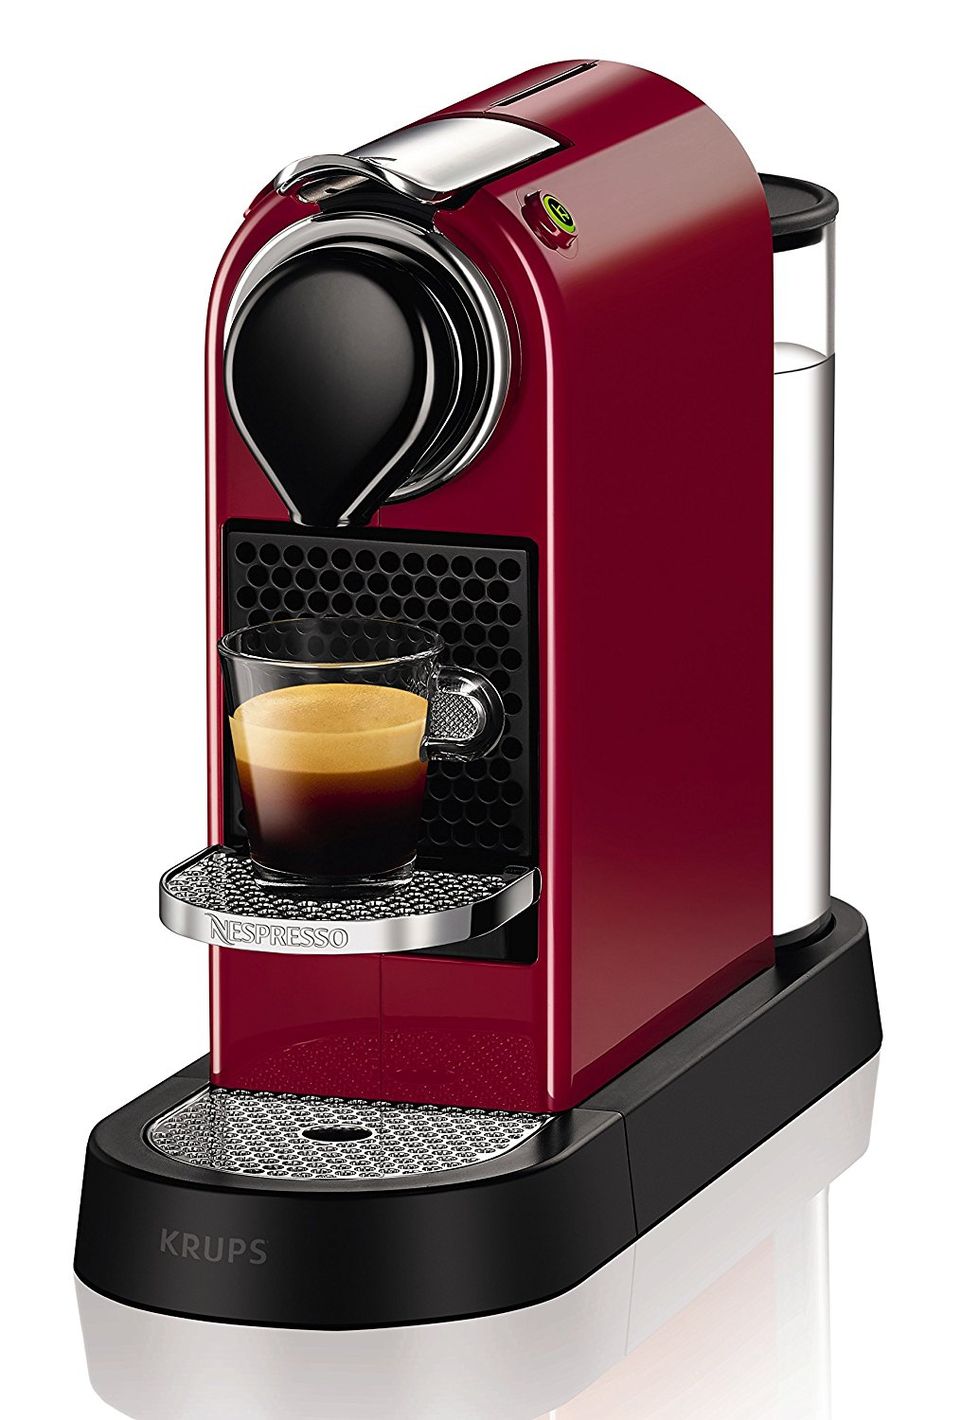 Come si utilizza la macchina Superautomatica con il caffè in polvere? FAQ